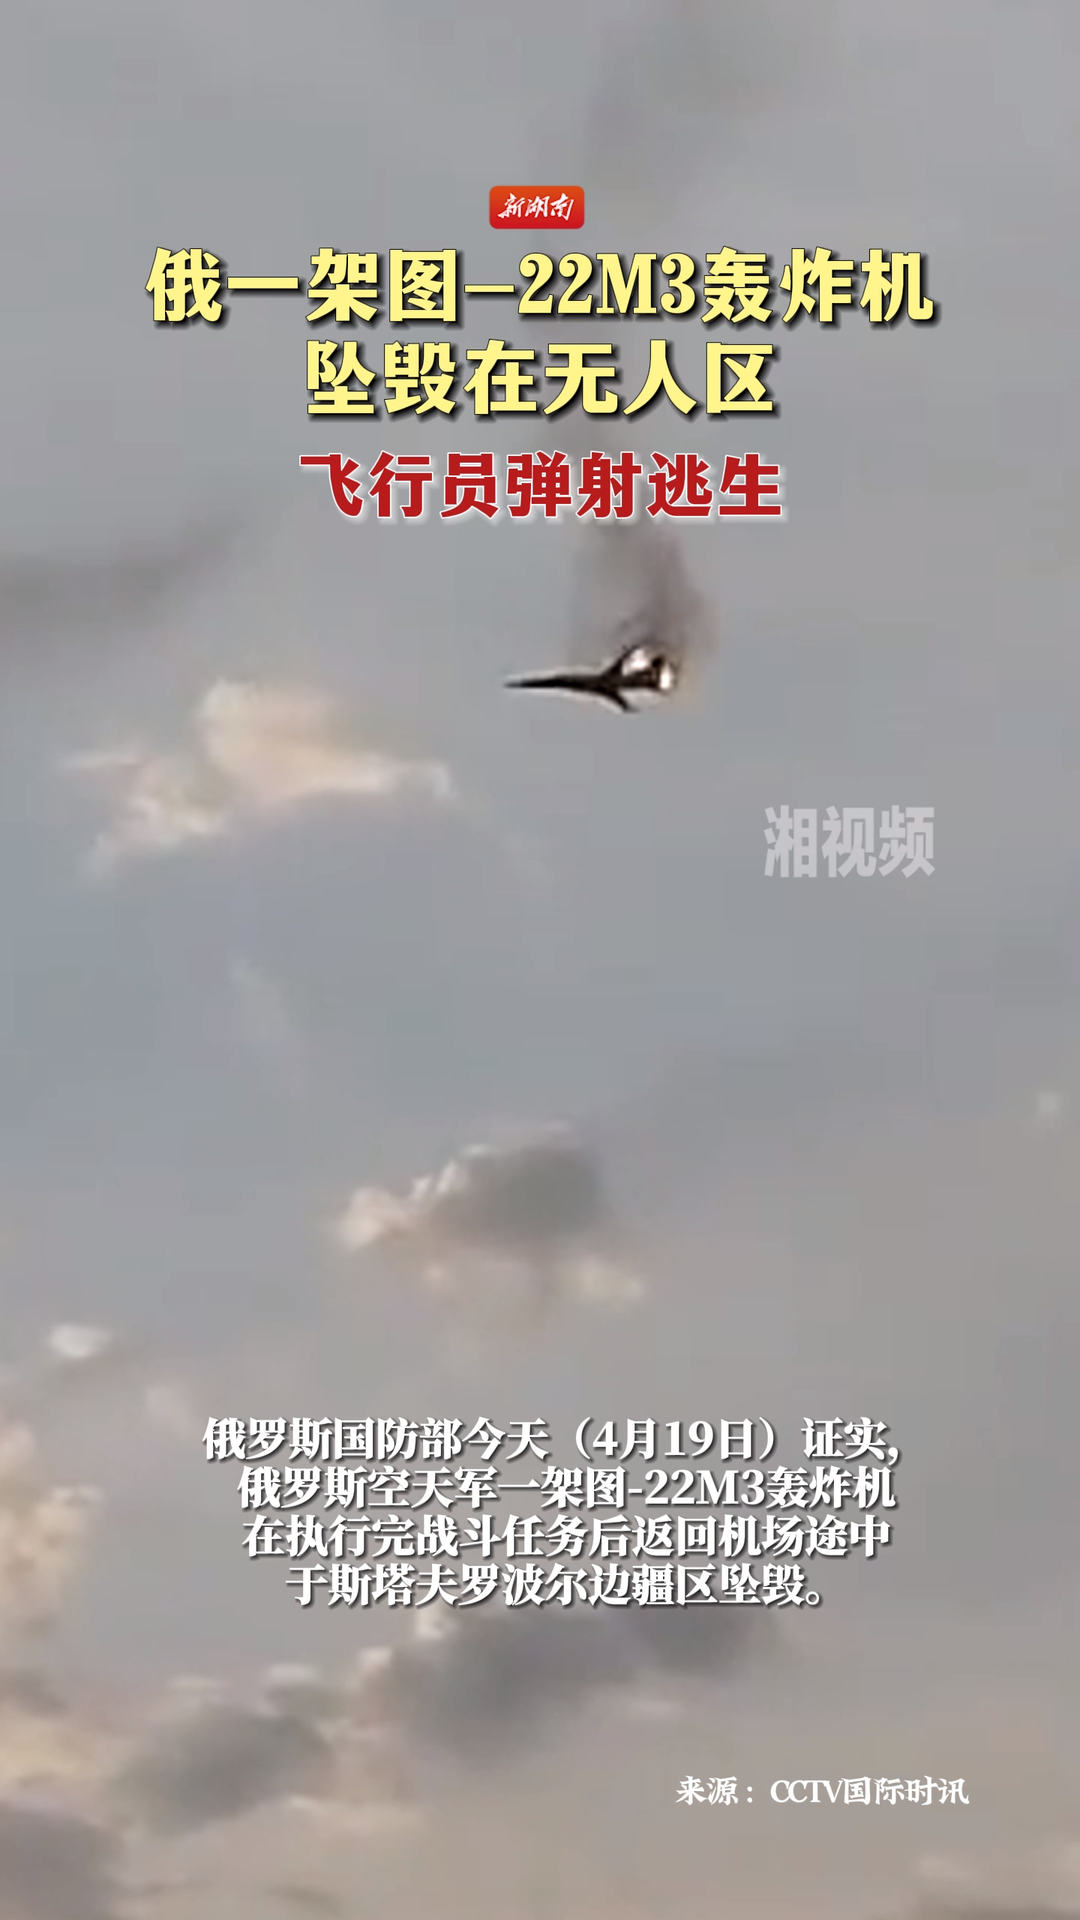 俄一架图-22M3轰炸机坠毁